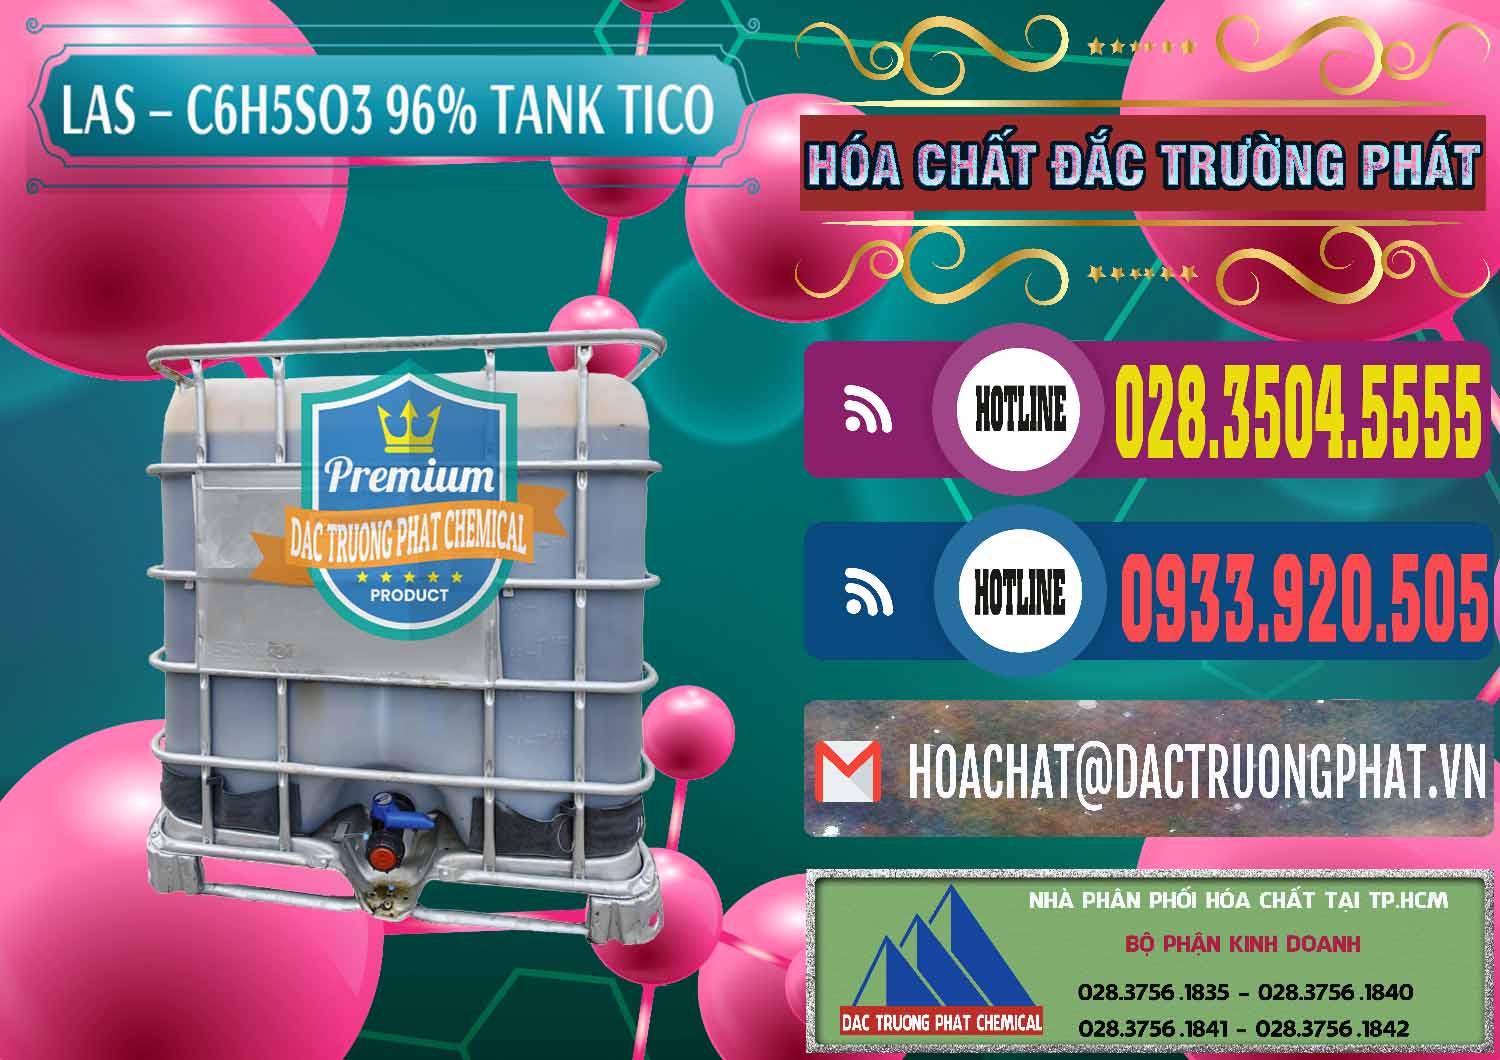 Cty chuyên bán và cung ứng Chất tạo bọt Las P Tico Tank IBC Bồn Việt Nam - 0488 - Cty phân phối _ cung ứng hóa chất tại TP.HCM - muabanhoachat.com.vn